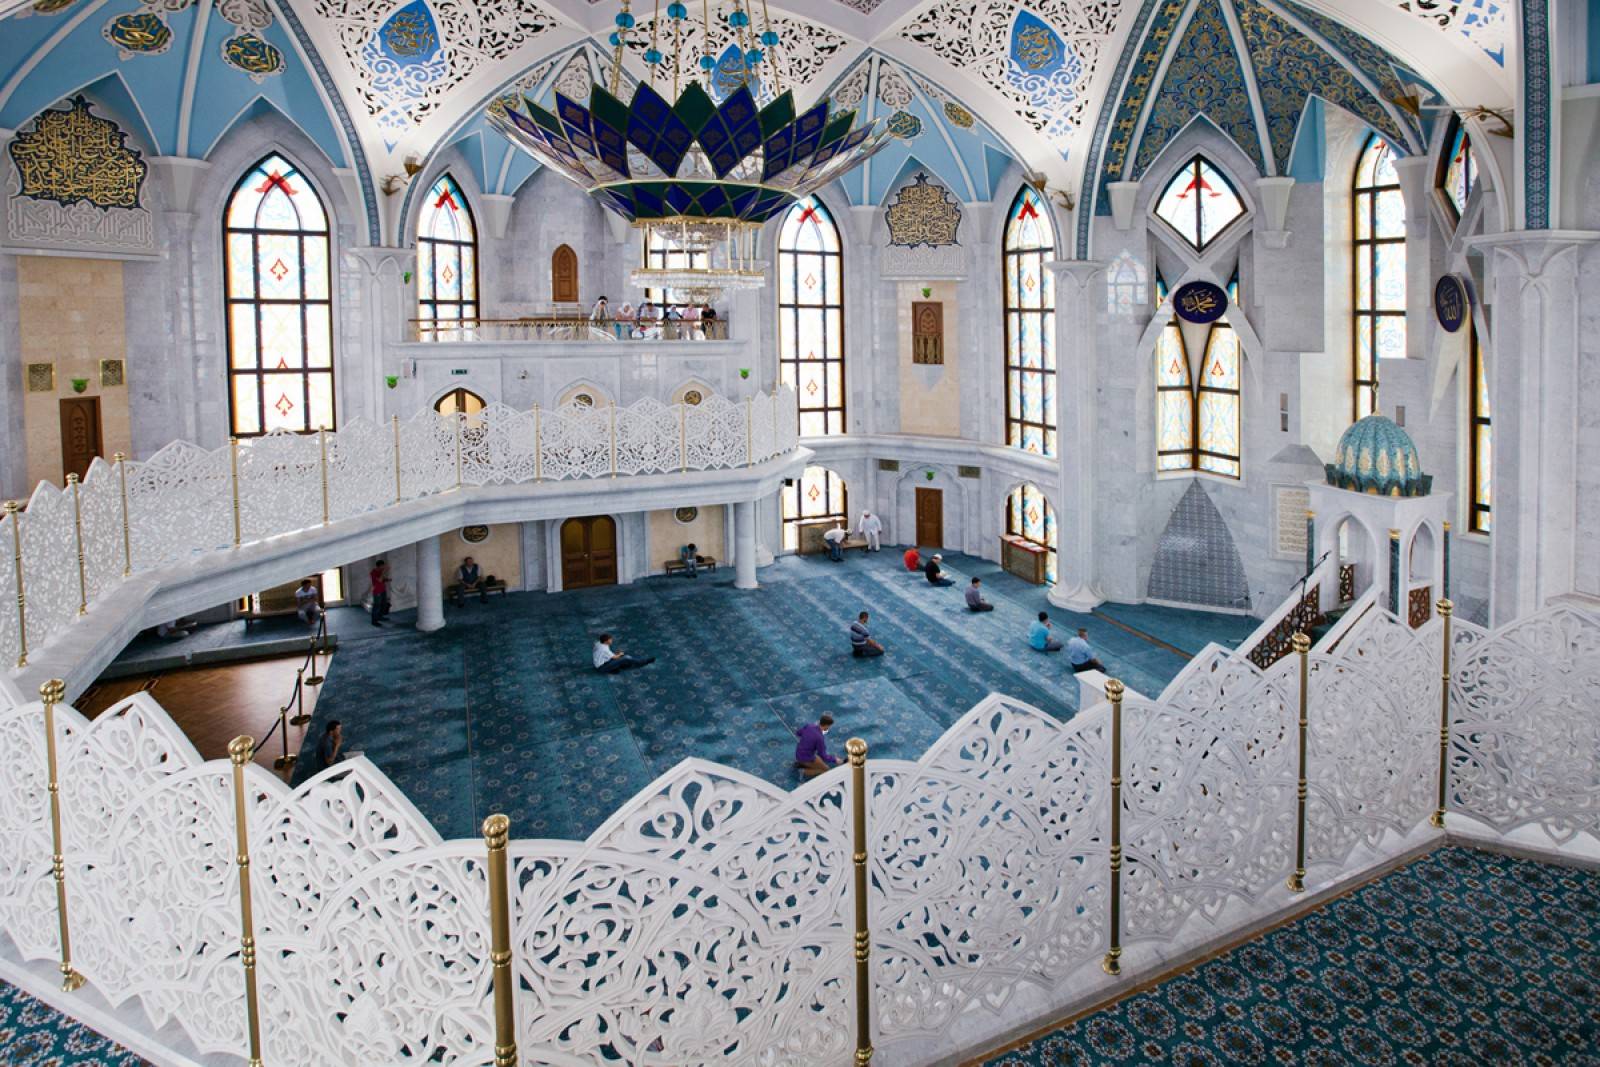 Казань мечеть кул шариф фото внутри